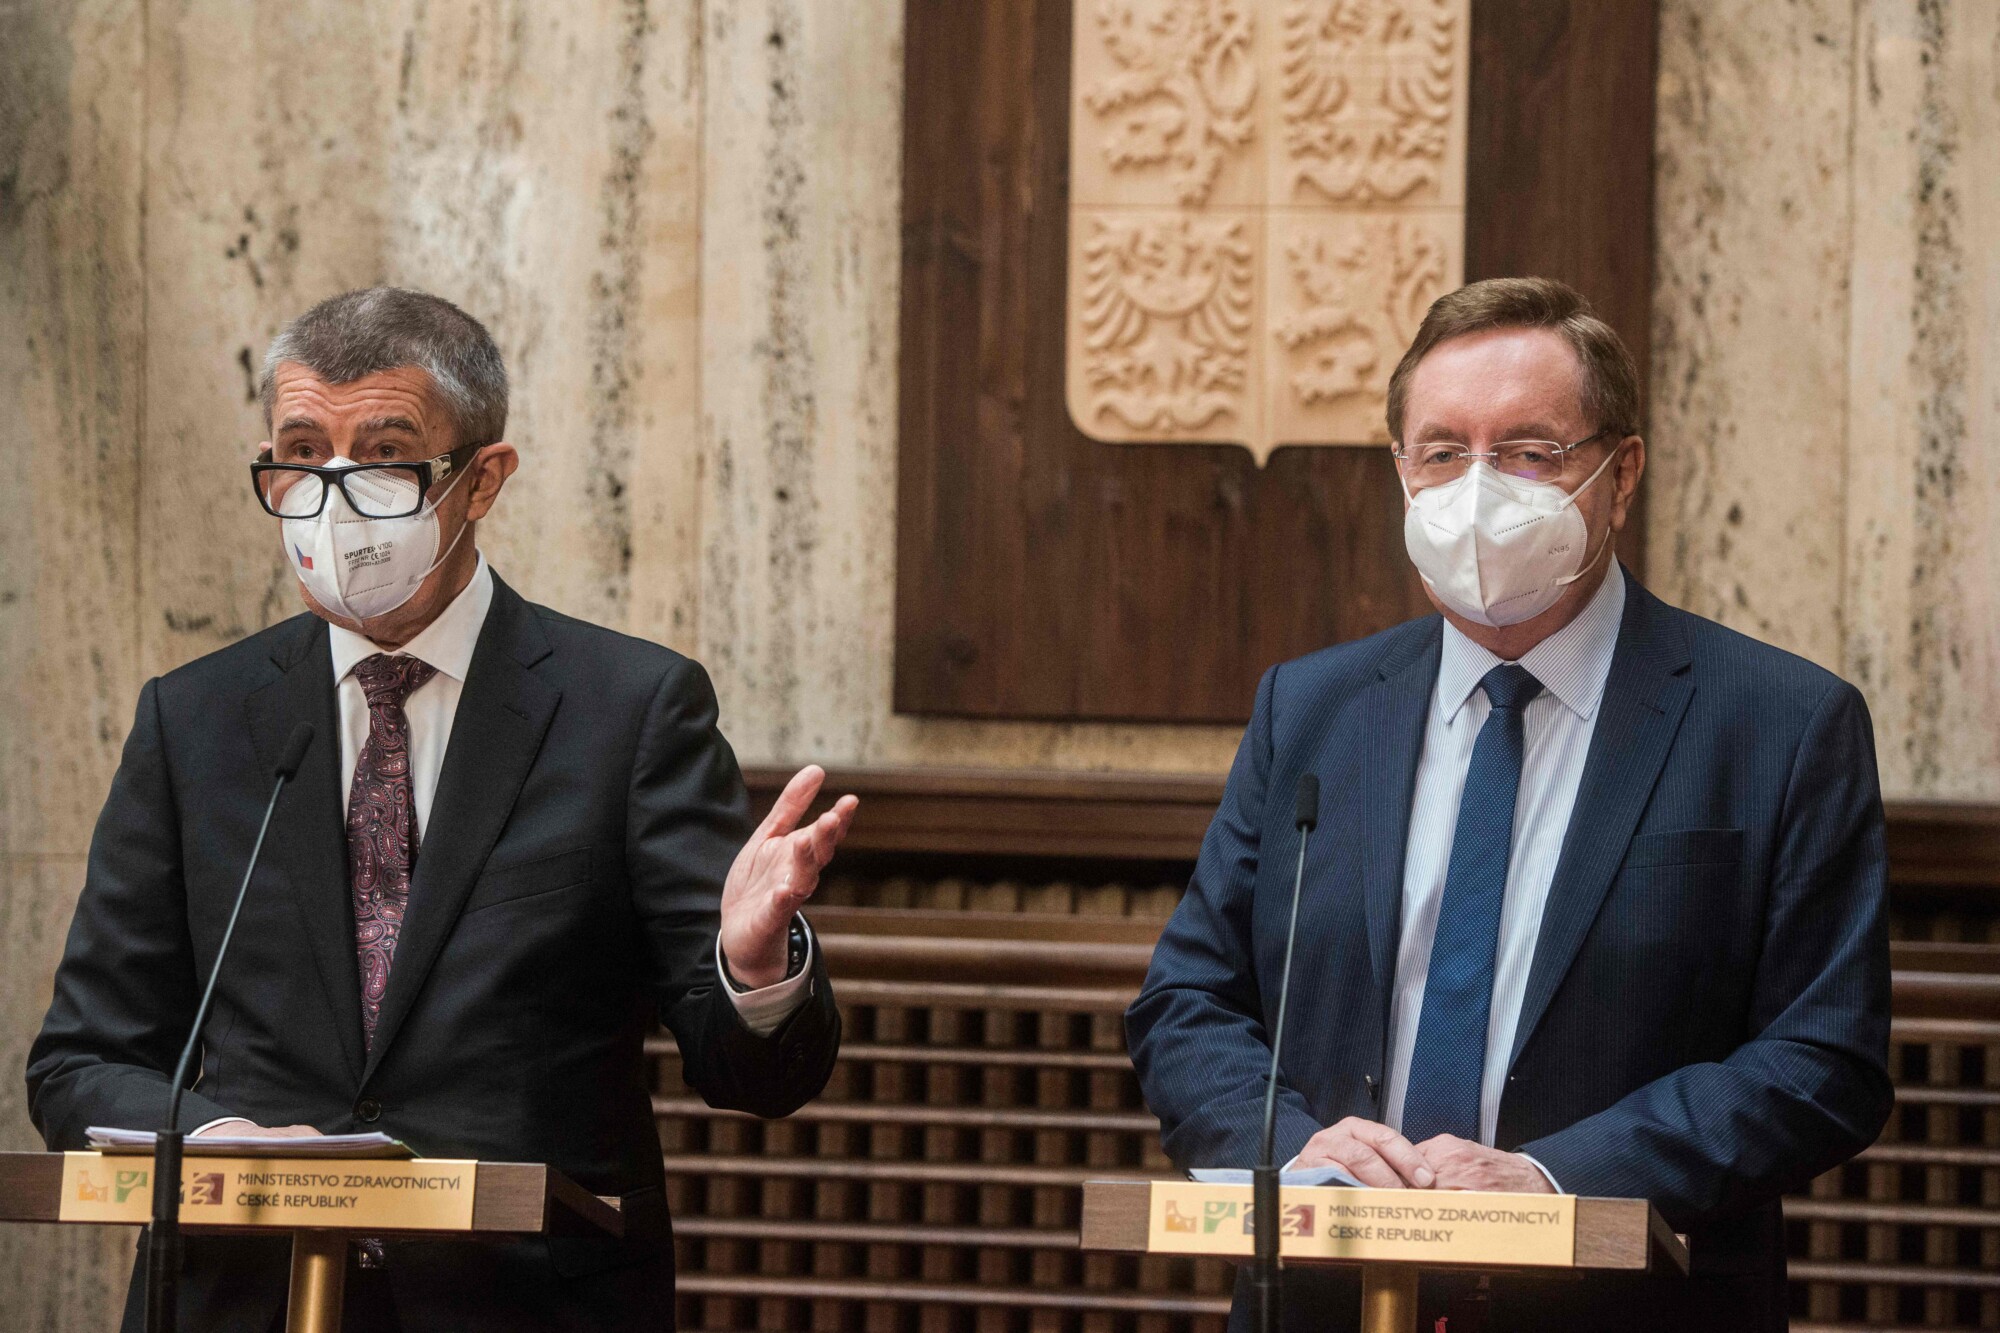 3rd Health Minister Fired in Virus-Battered Czech Republic